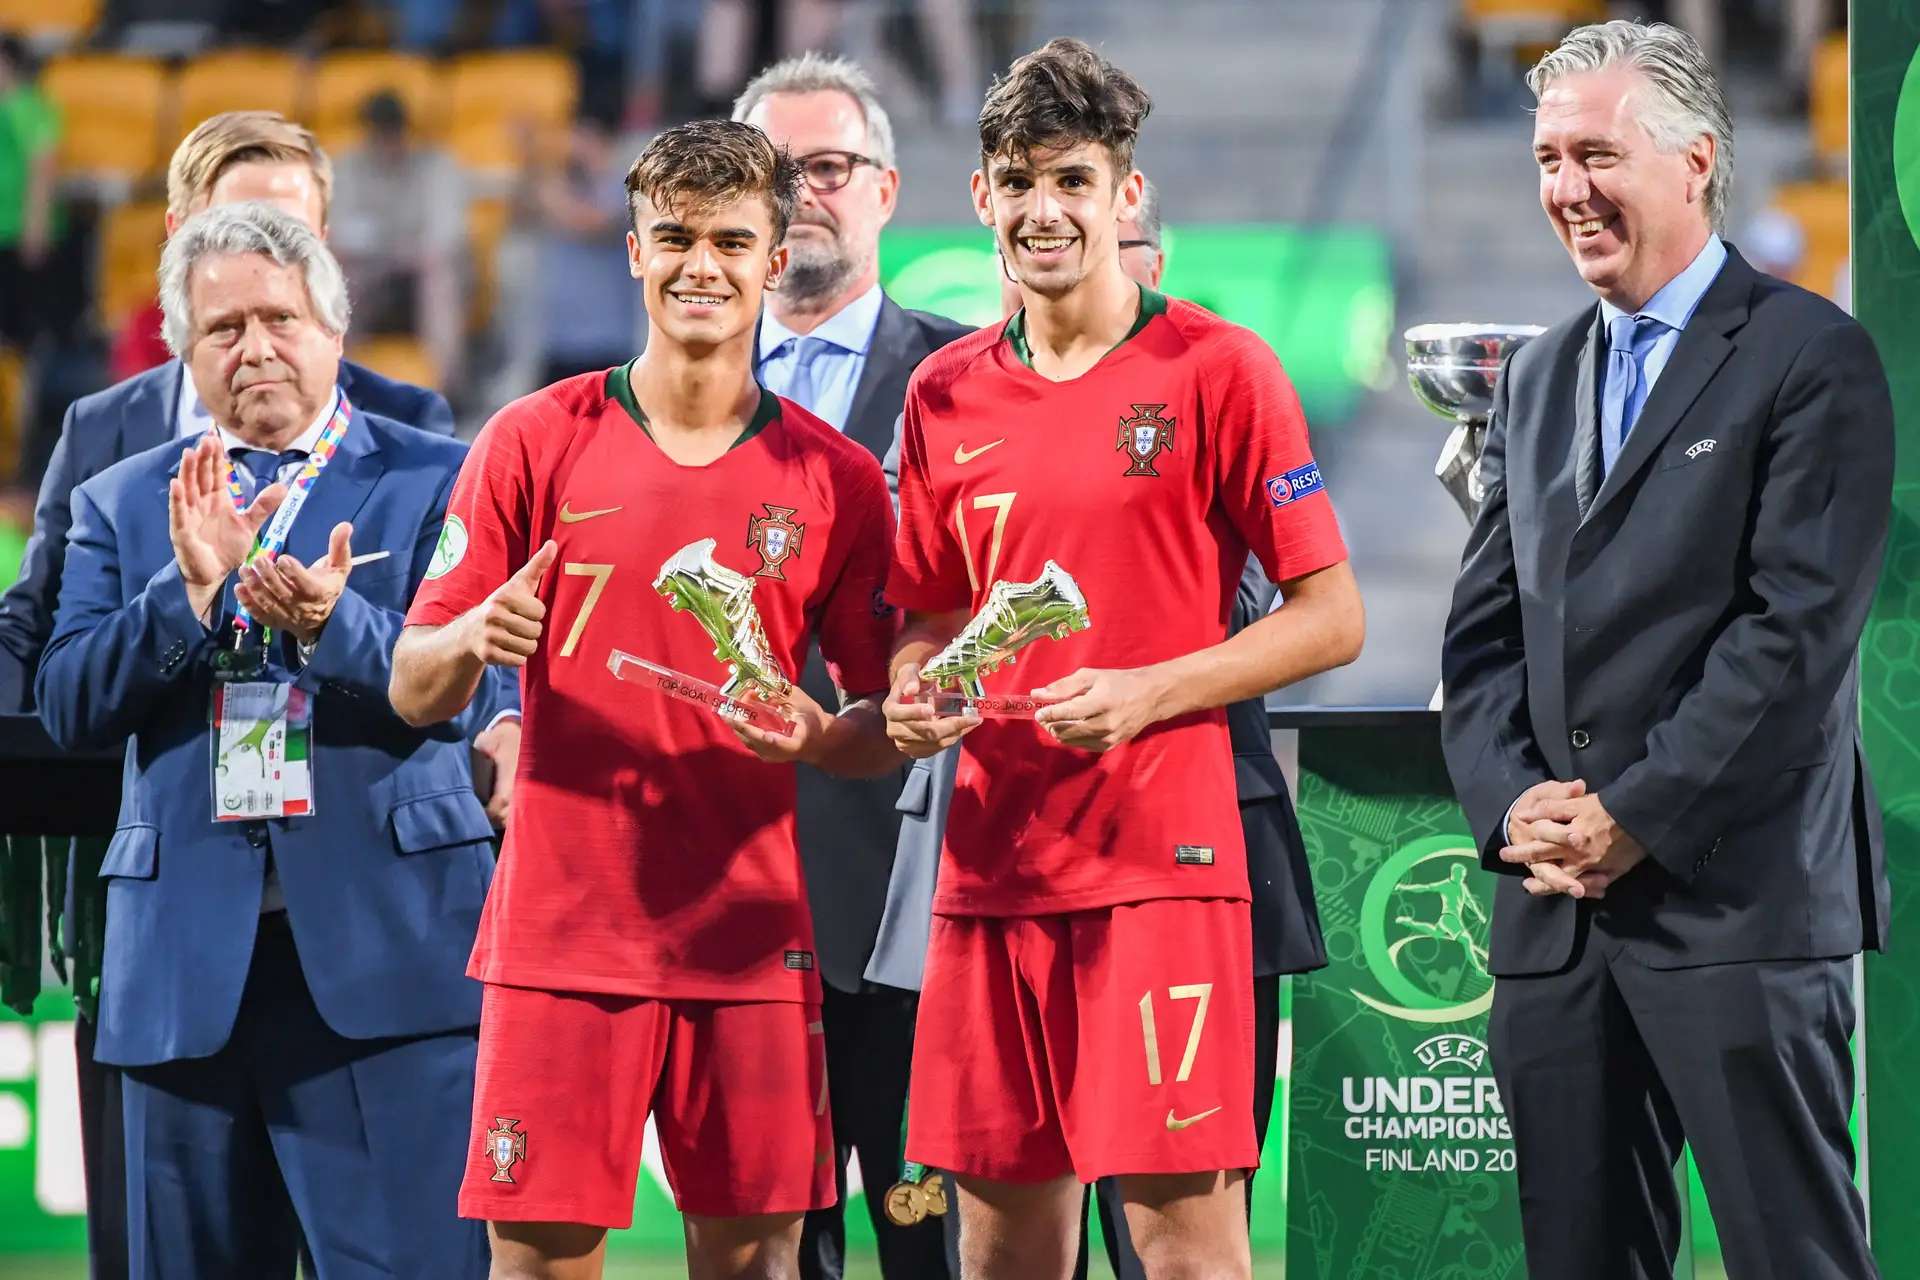 Portugal perde com Espanha e falha revalidação do título Europeu sub-19 -  Sintra Notícias